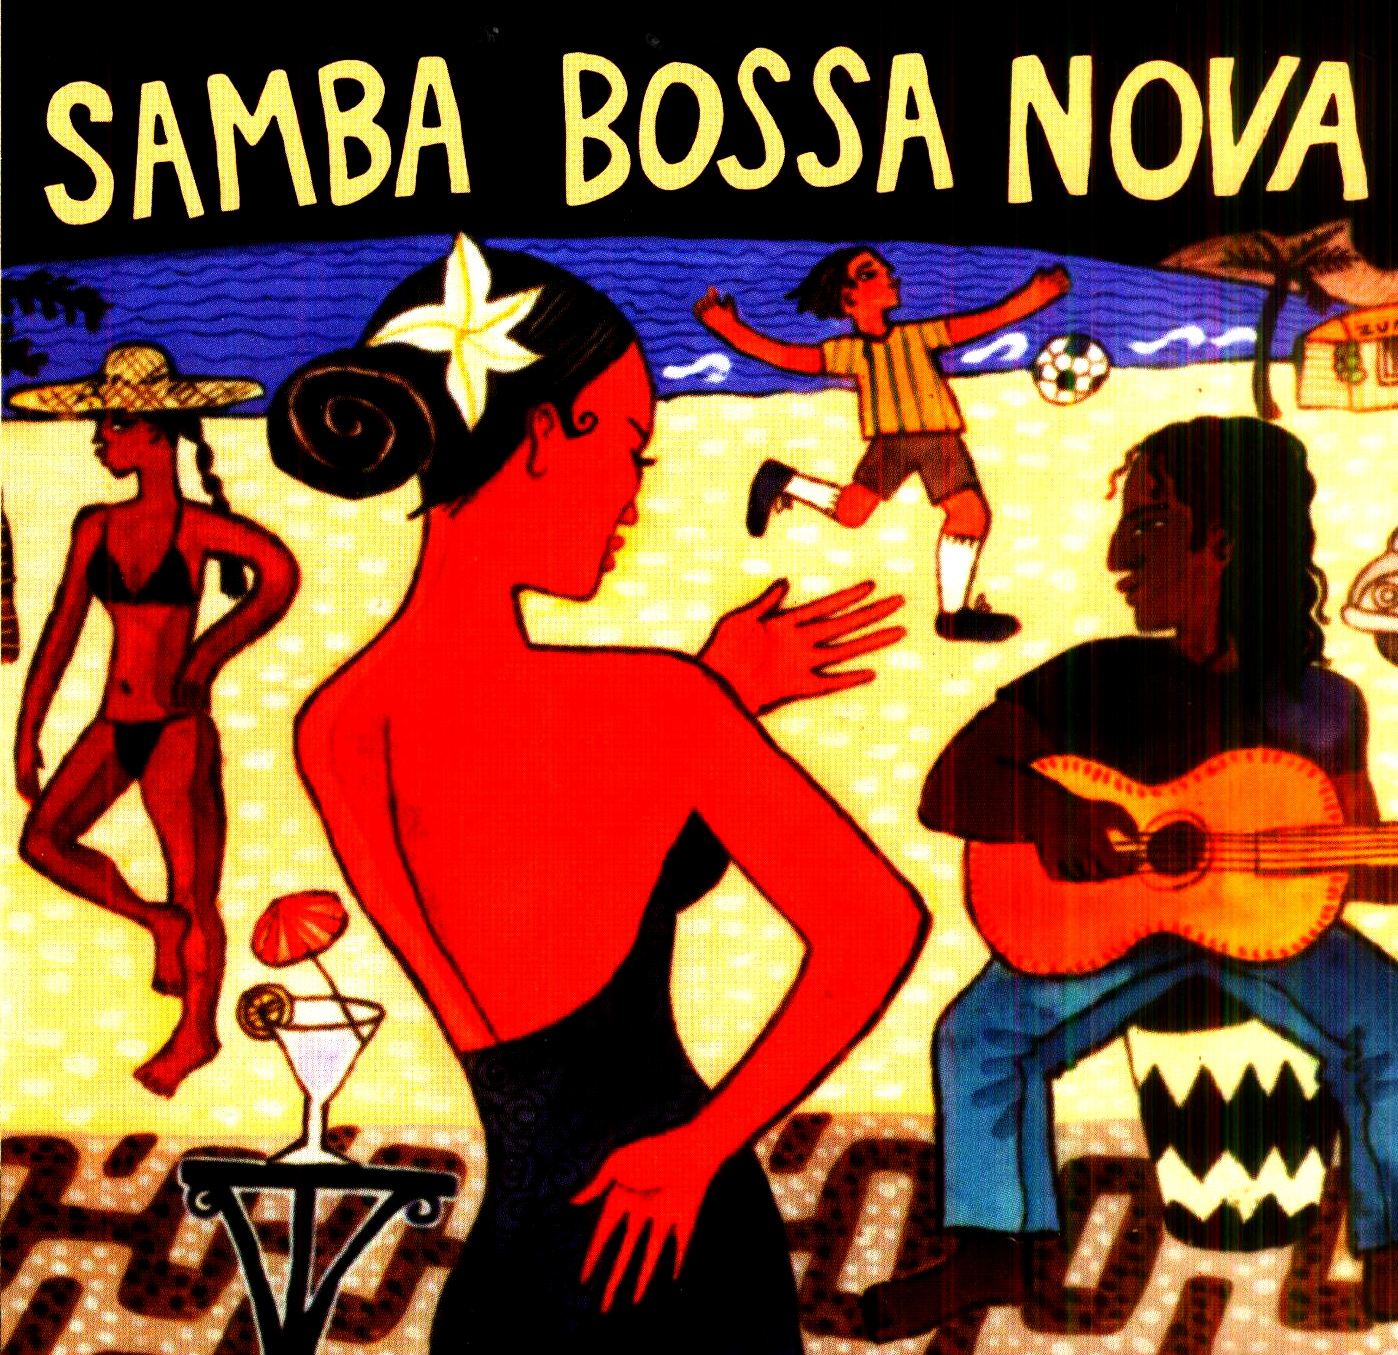 Босса нова это. Putumayo presents Samba Bossa Nova. Босса Нова стиль. Босса Нова музыкальный стиль. Босса Нова танец.